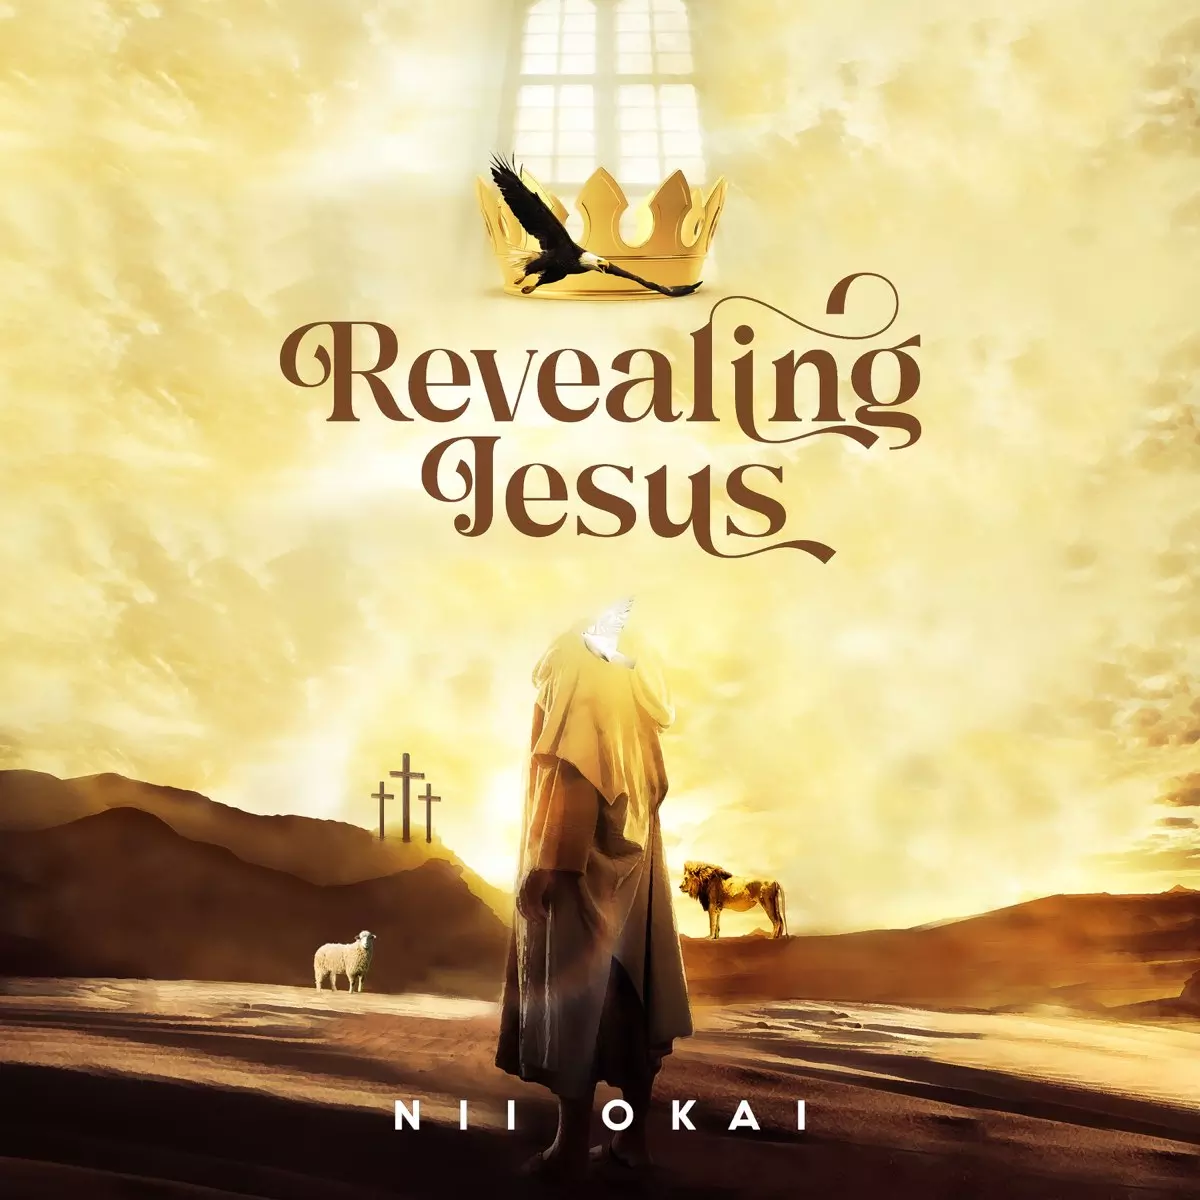 Revealing Jesus by Nii Okai on Apple Music